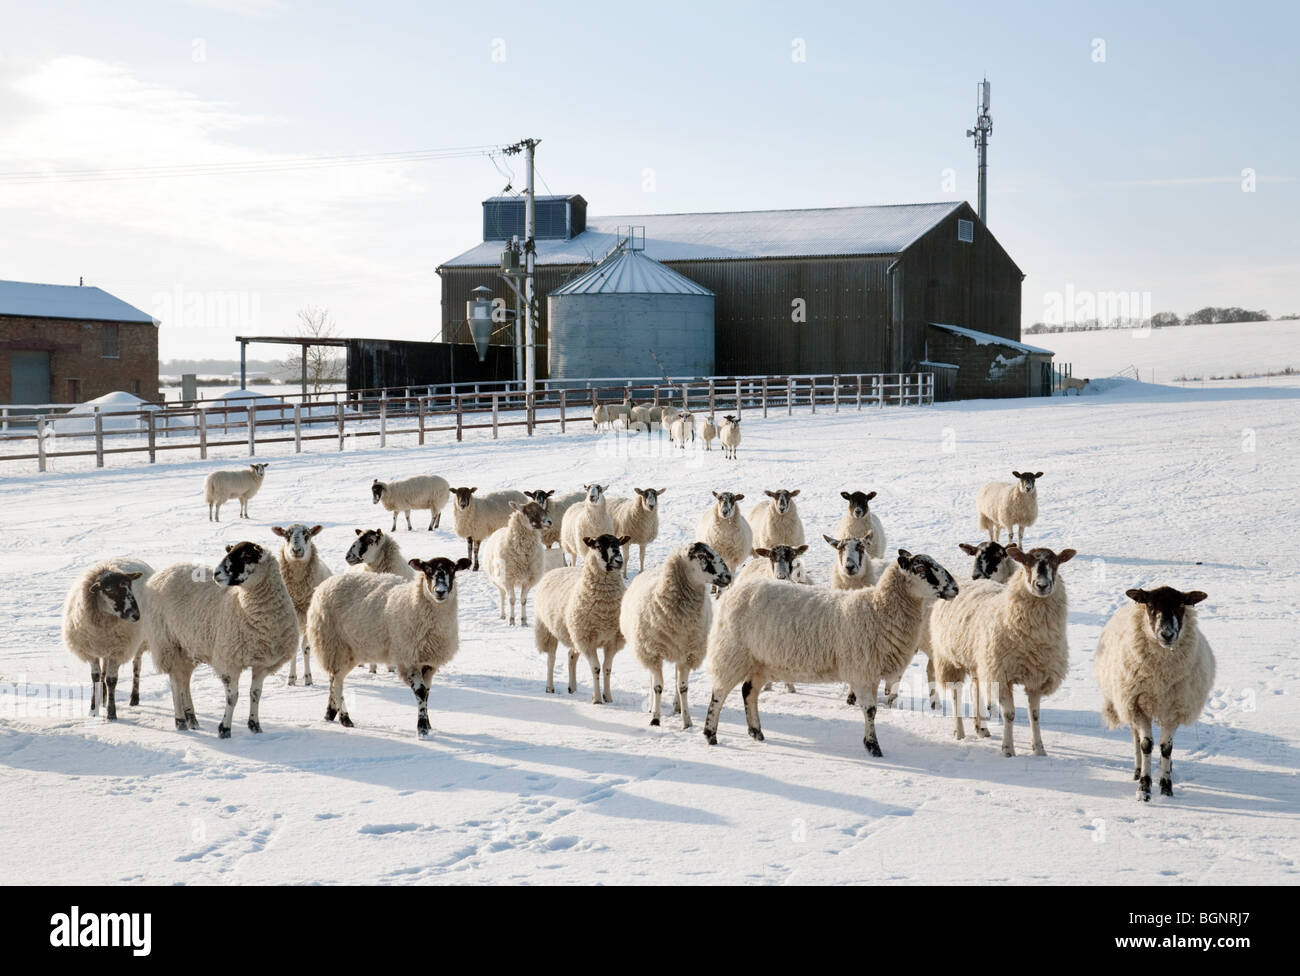 Herde von Schafen, die im Winter auf einem Feld im Schnee auf einem Bauernhof in Molton Village in der Nähe von Newmarket, Suffolk, Großbritannien, grasen Stockfoto